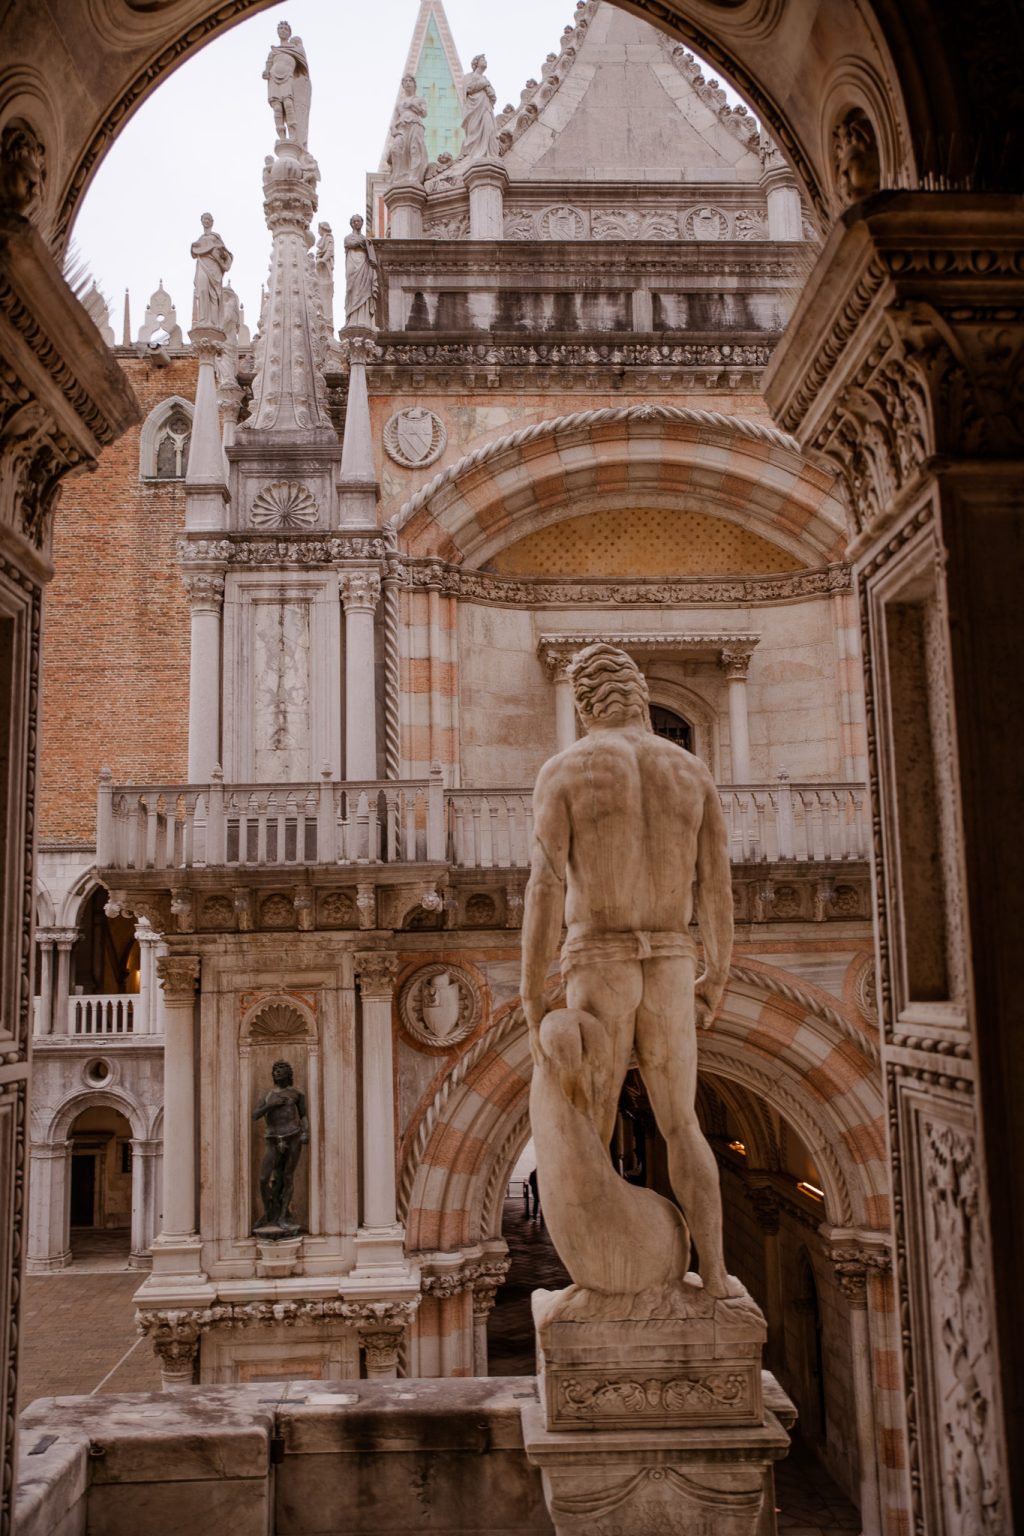 best of venice with saint mark, doge's palace and gondola ride | il meglio di venezia, con san marco, palazzo ducale e giro in gondola